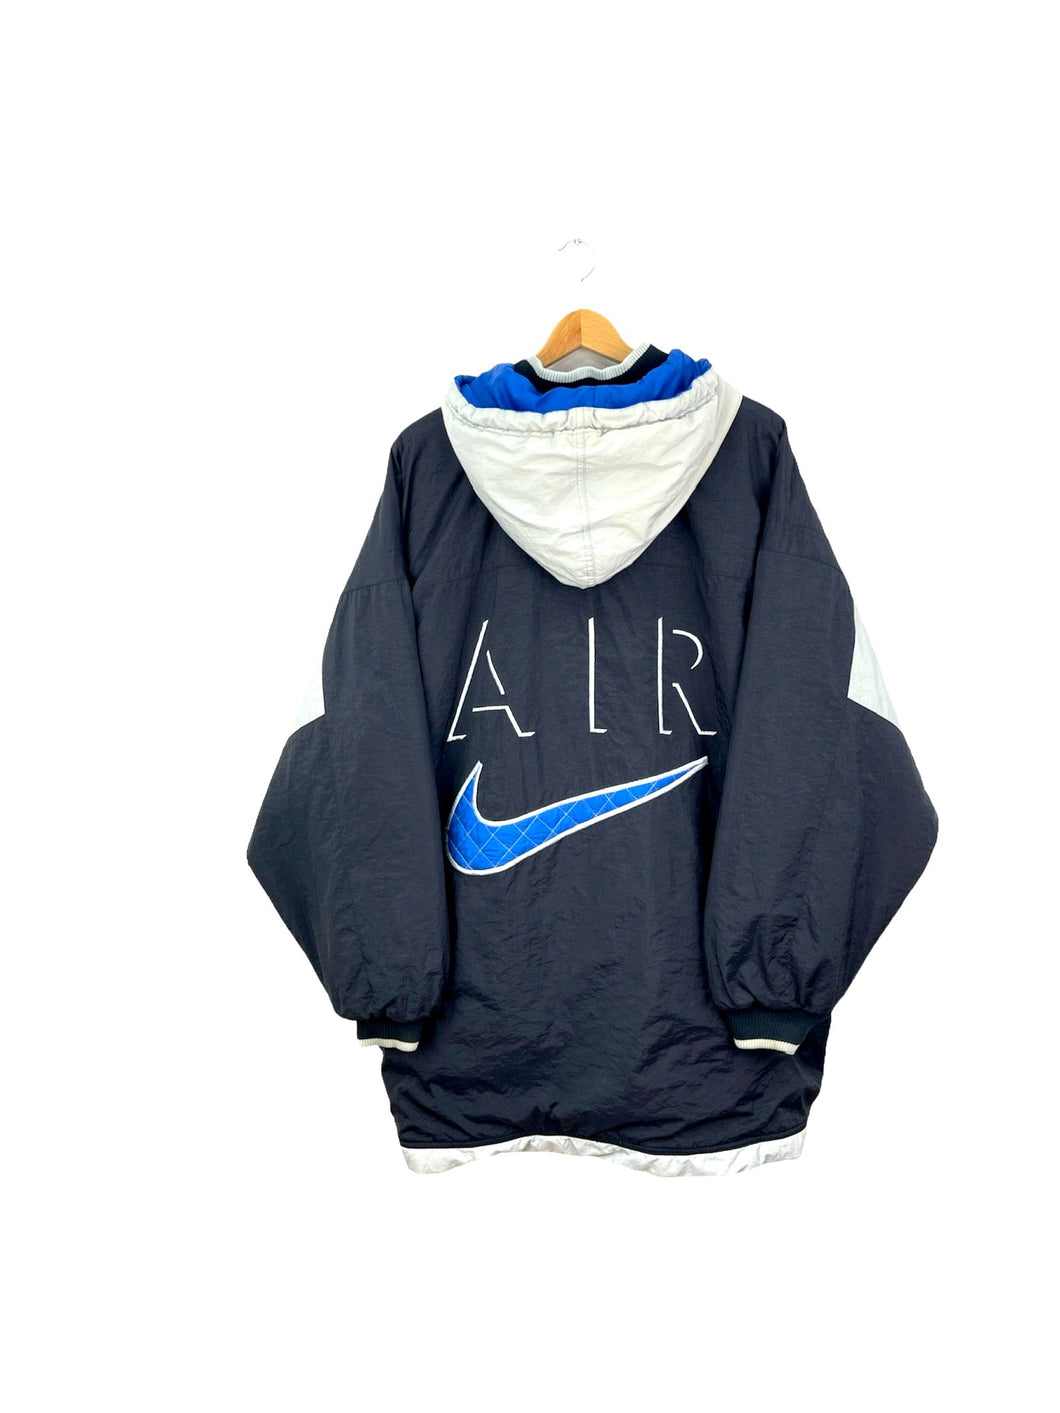 Nike Air Coat - Large